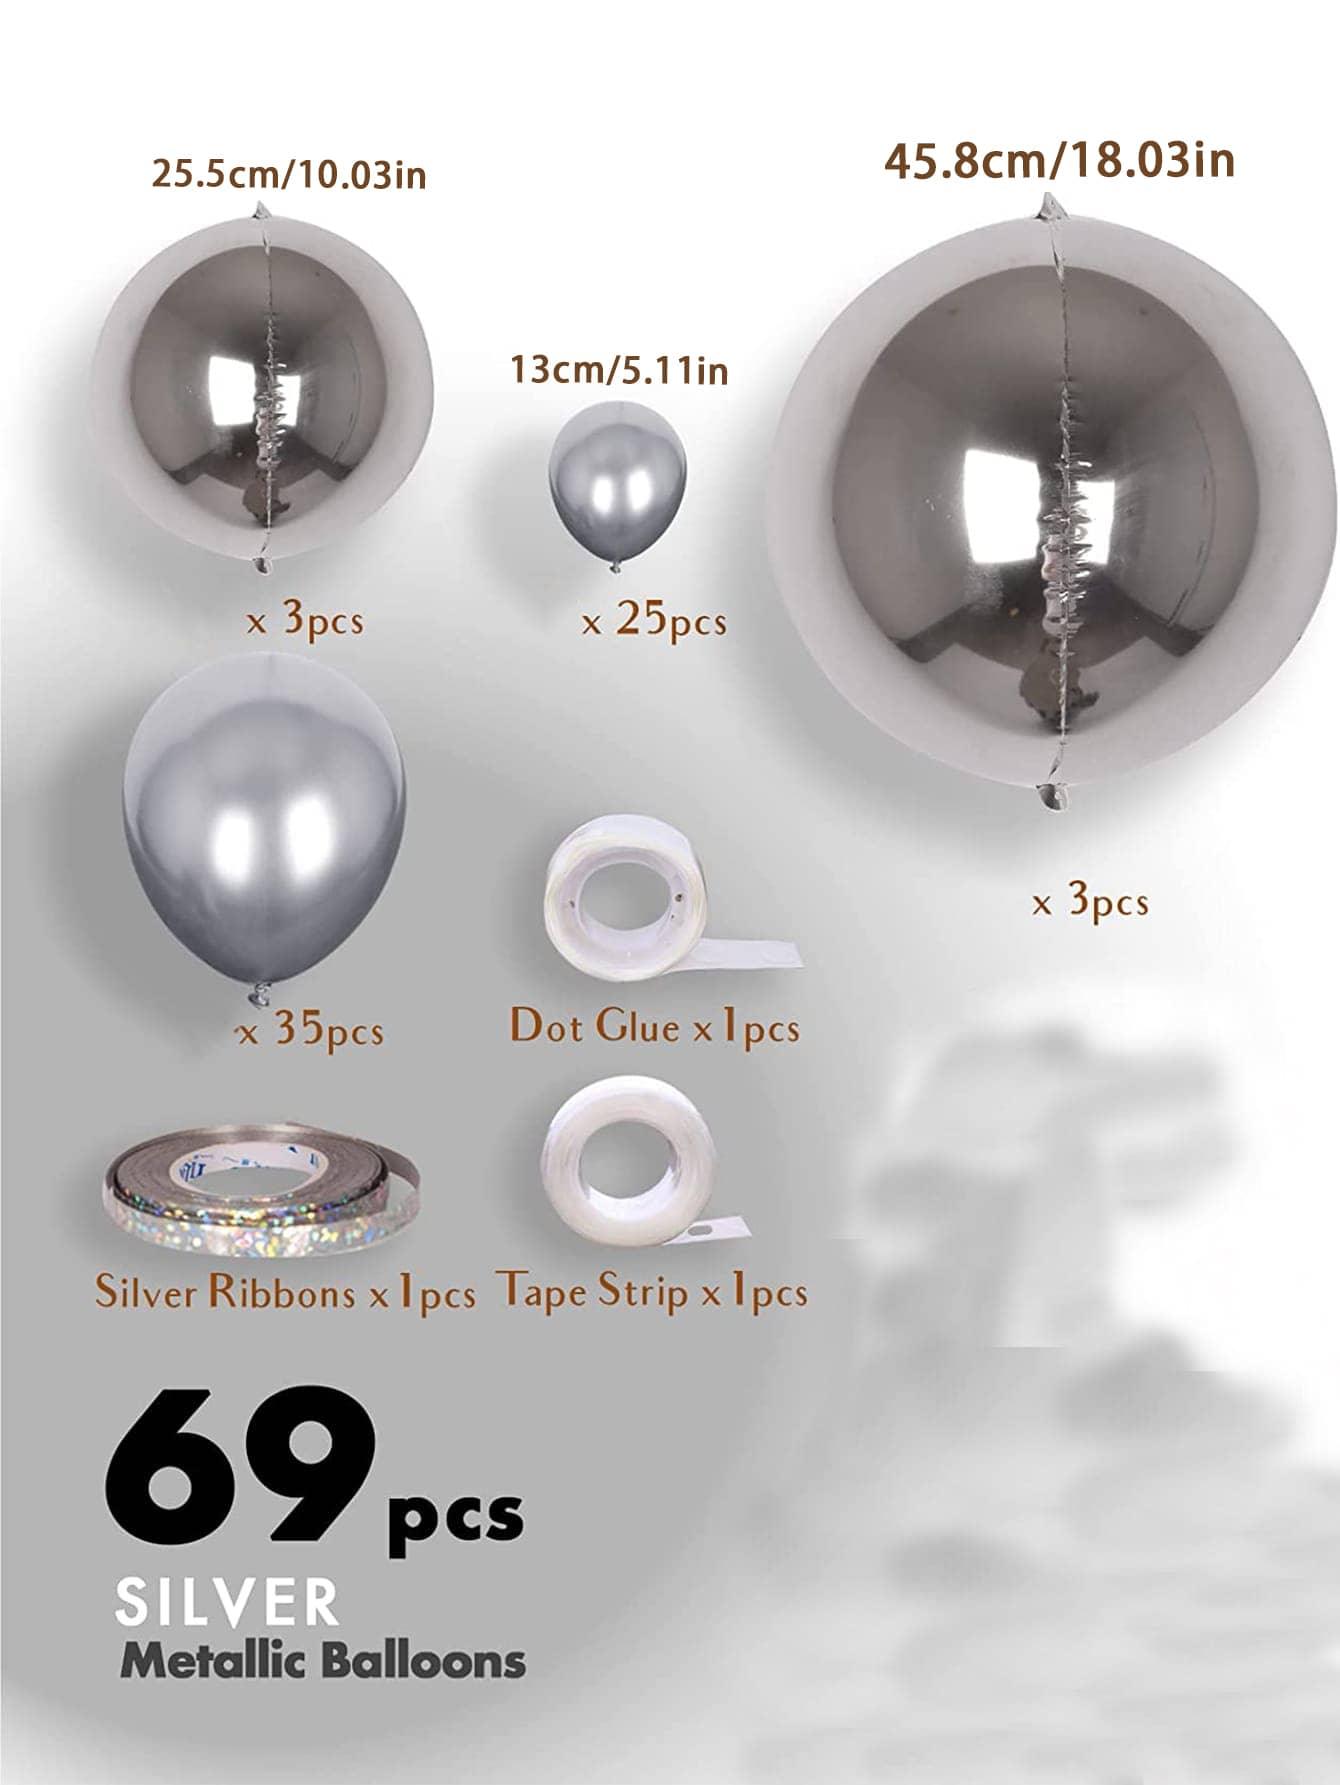 69pcs Metallic Balloon Set - If you say i do